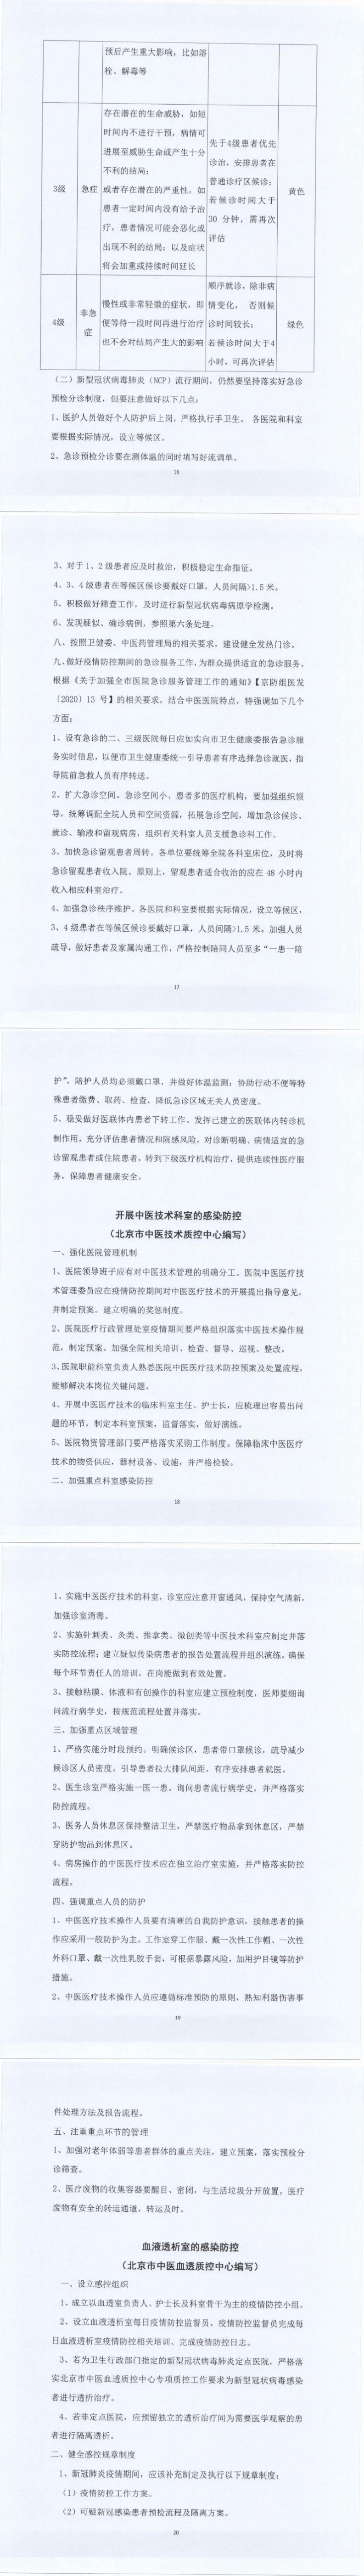 关于北京市中医医疗机构感染防控的指导意见_16-20_0.jpg